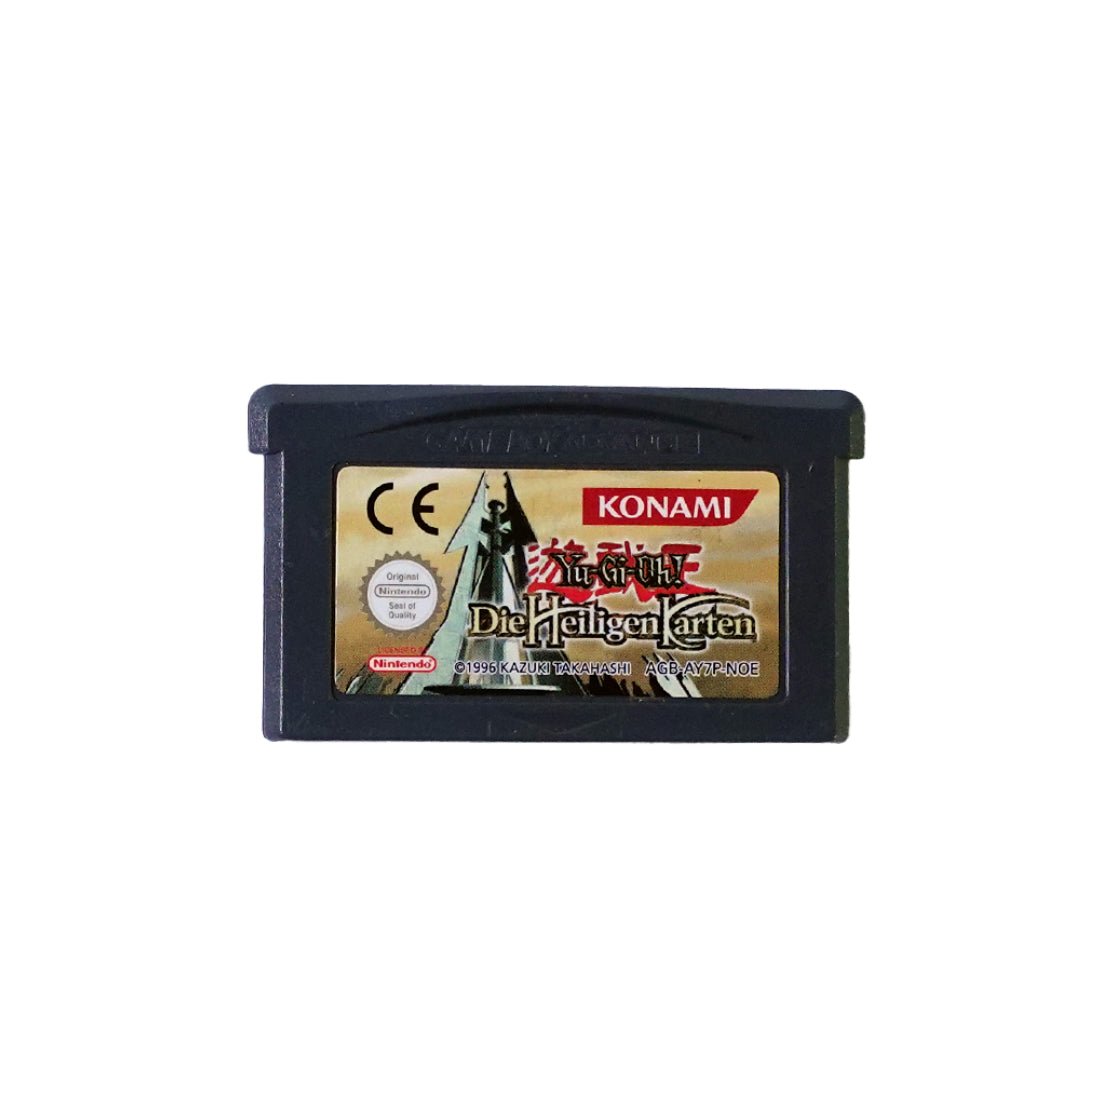 (Pre-Owned) Yu-Gi-Oh!: Die heiligen Karten Game - Gameboy Advance - ريترو - Store 974 | ستور ٩٧٤